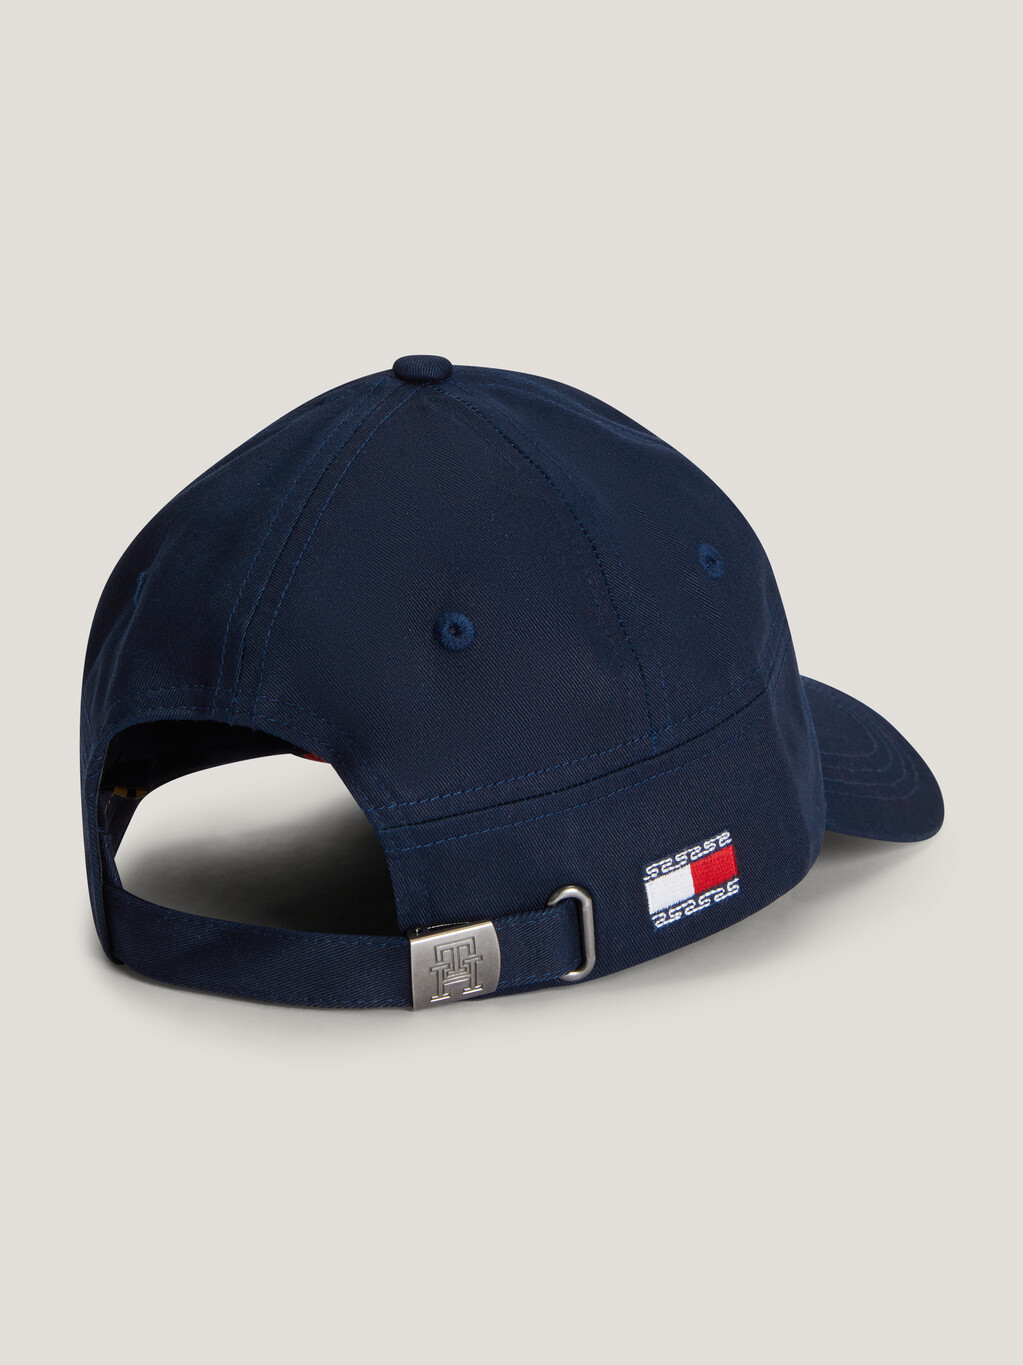 CNY T. Hilfiger Baseball Cap, Space Blue / Arizona Red, hi-res